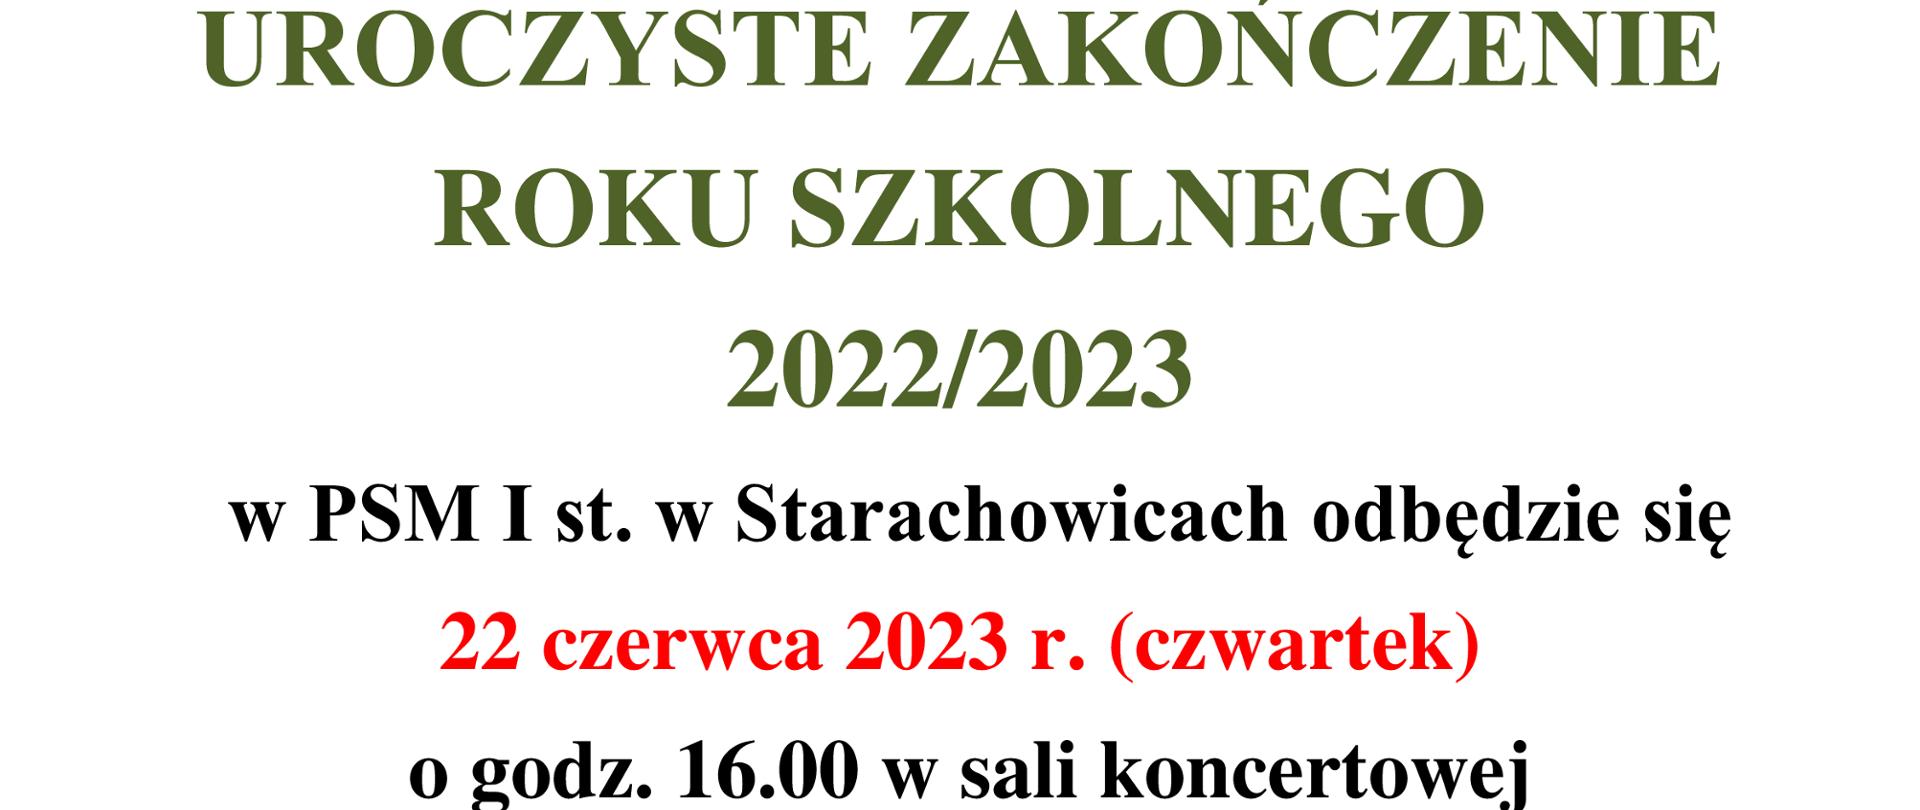 Uroczyste zakończenie roku szkolnego 2022/2023 w PSM I st. w Starachowicach odbędzie się 22 czerwca 2023r. ( czwartek) o godz. 16.00 w sali koncertowej.